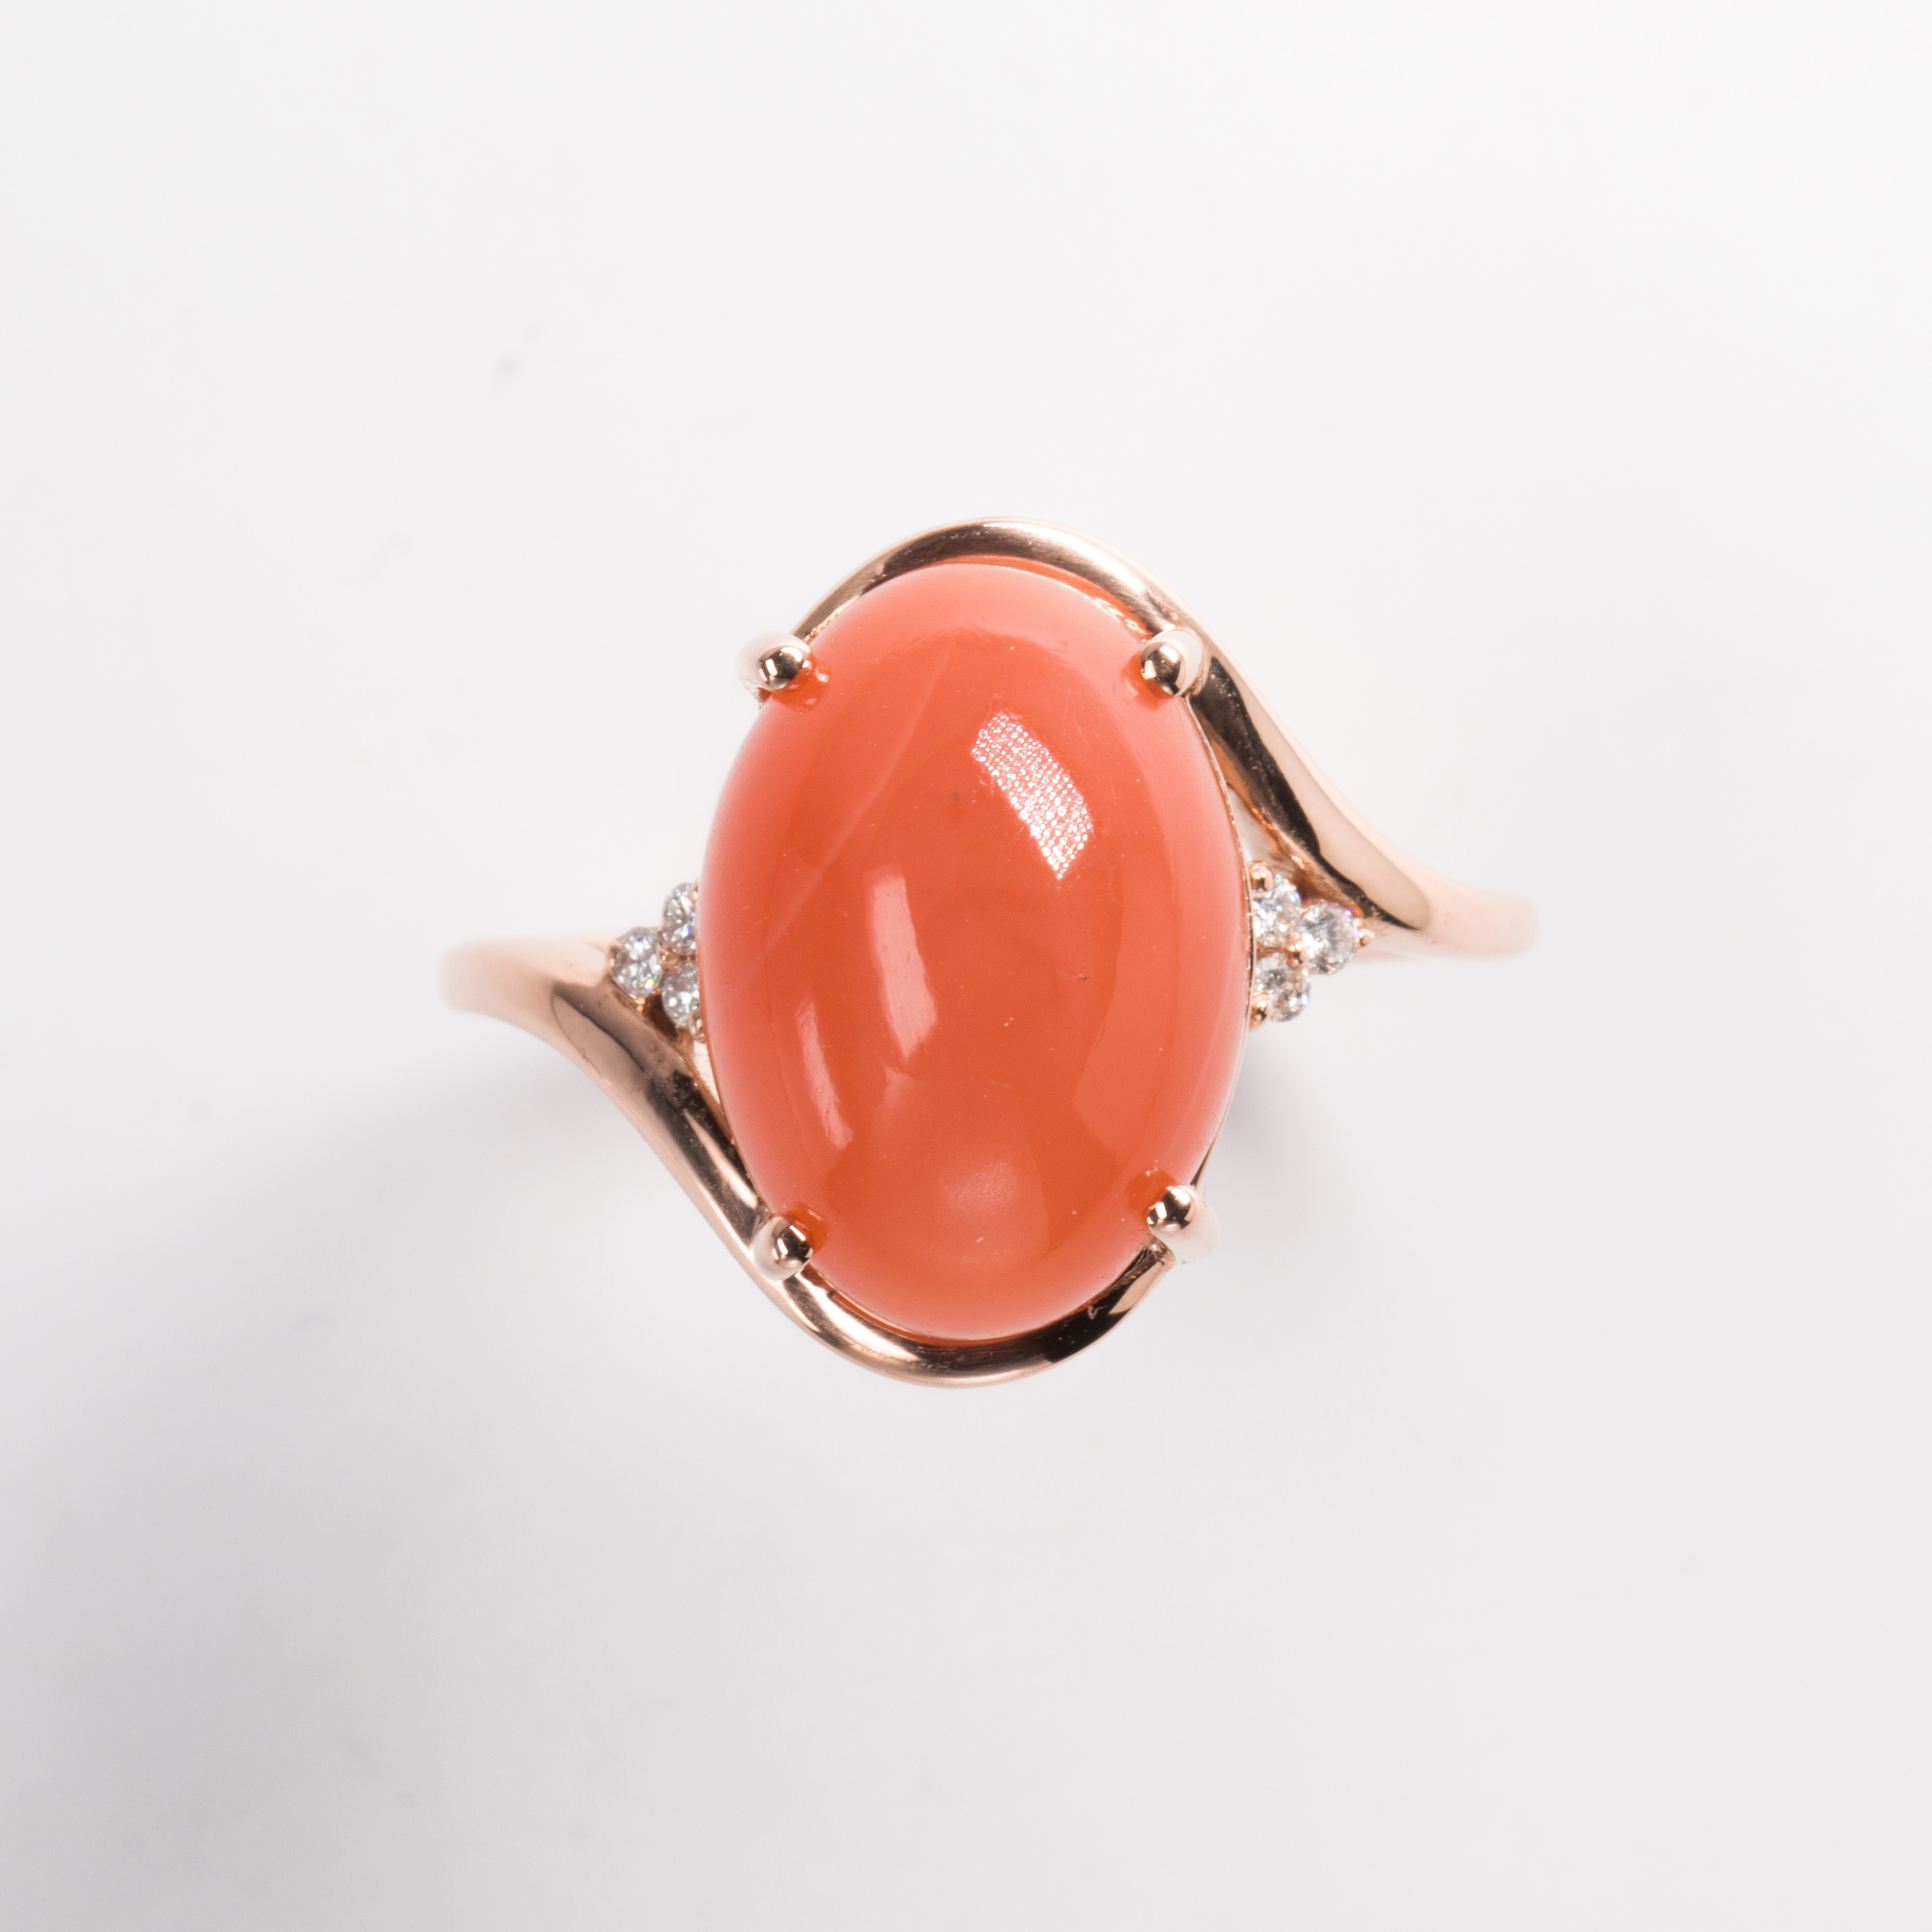 An orange moonstone and fourteen karat gold ring